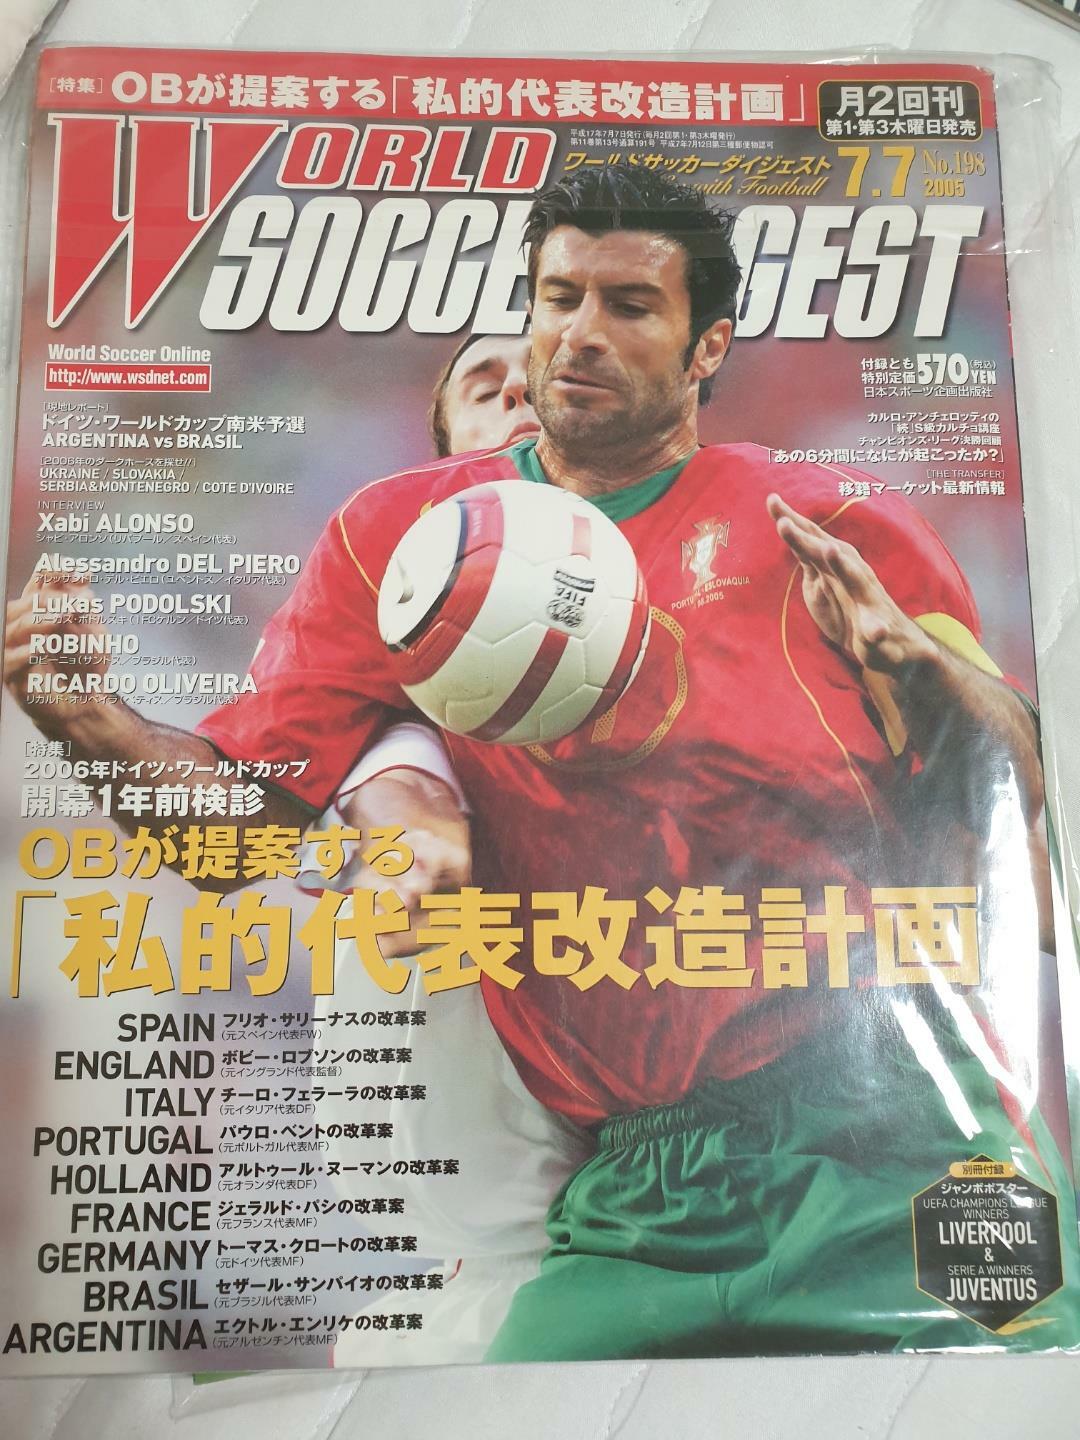 [중고] [일본축구잡지] 2006독일월드컵 분석 월드사커다이제스트 World Soccer digest (MMP)